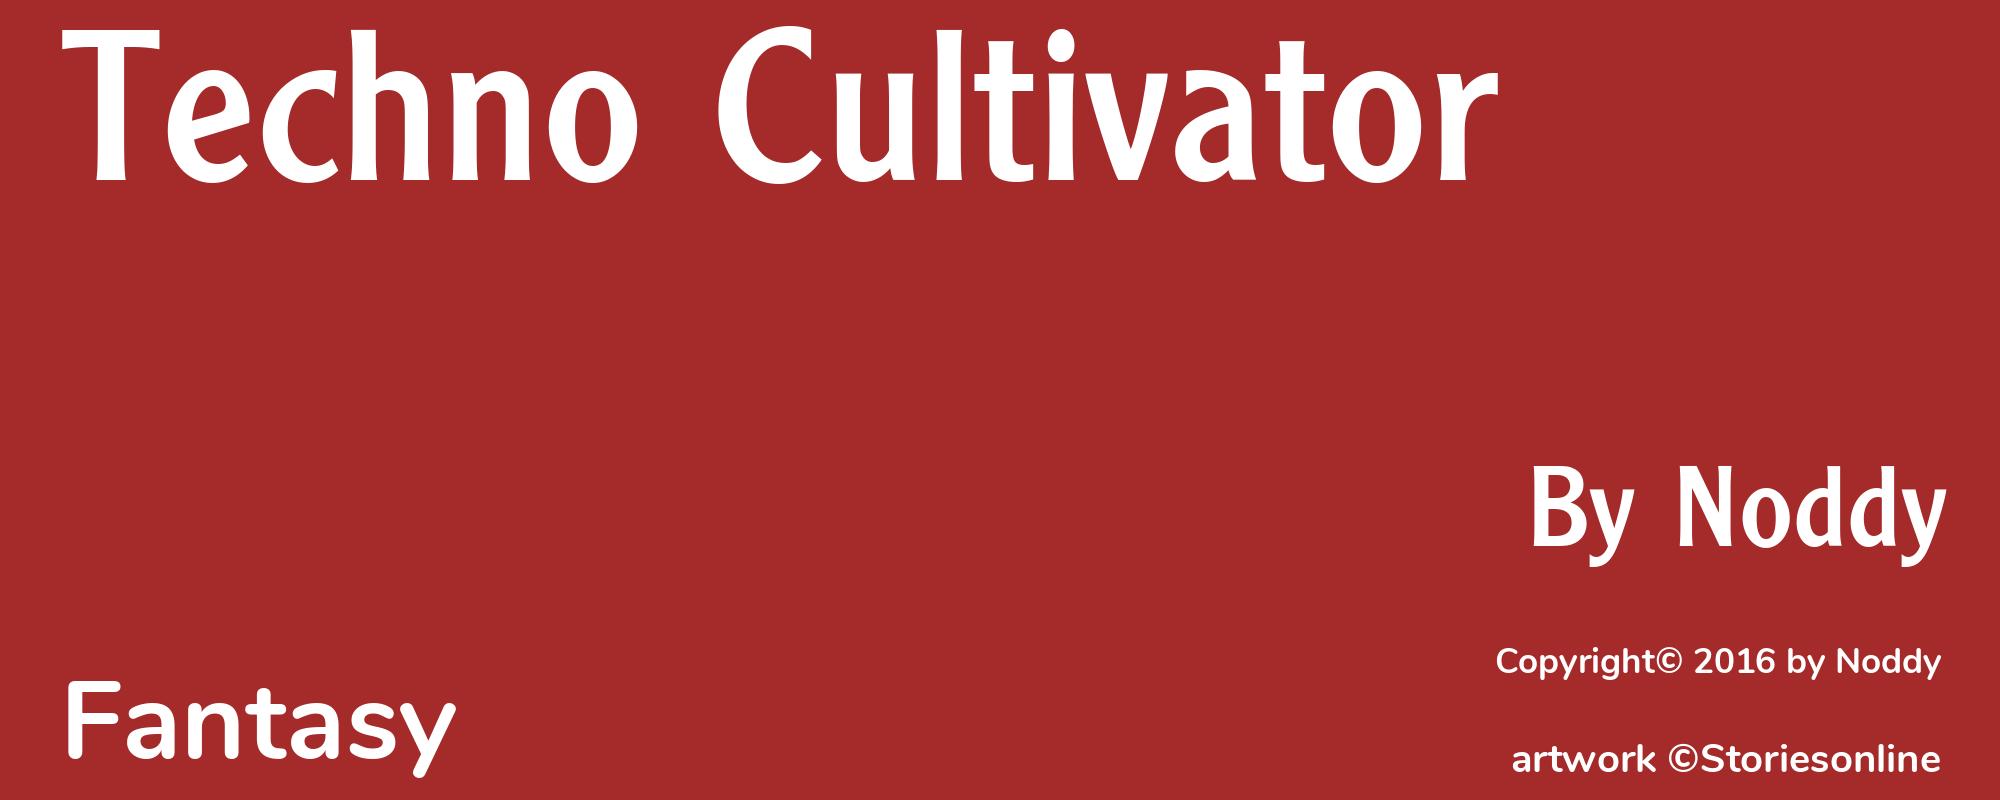 Techno Cultivator - Cover